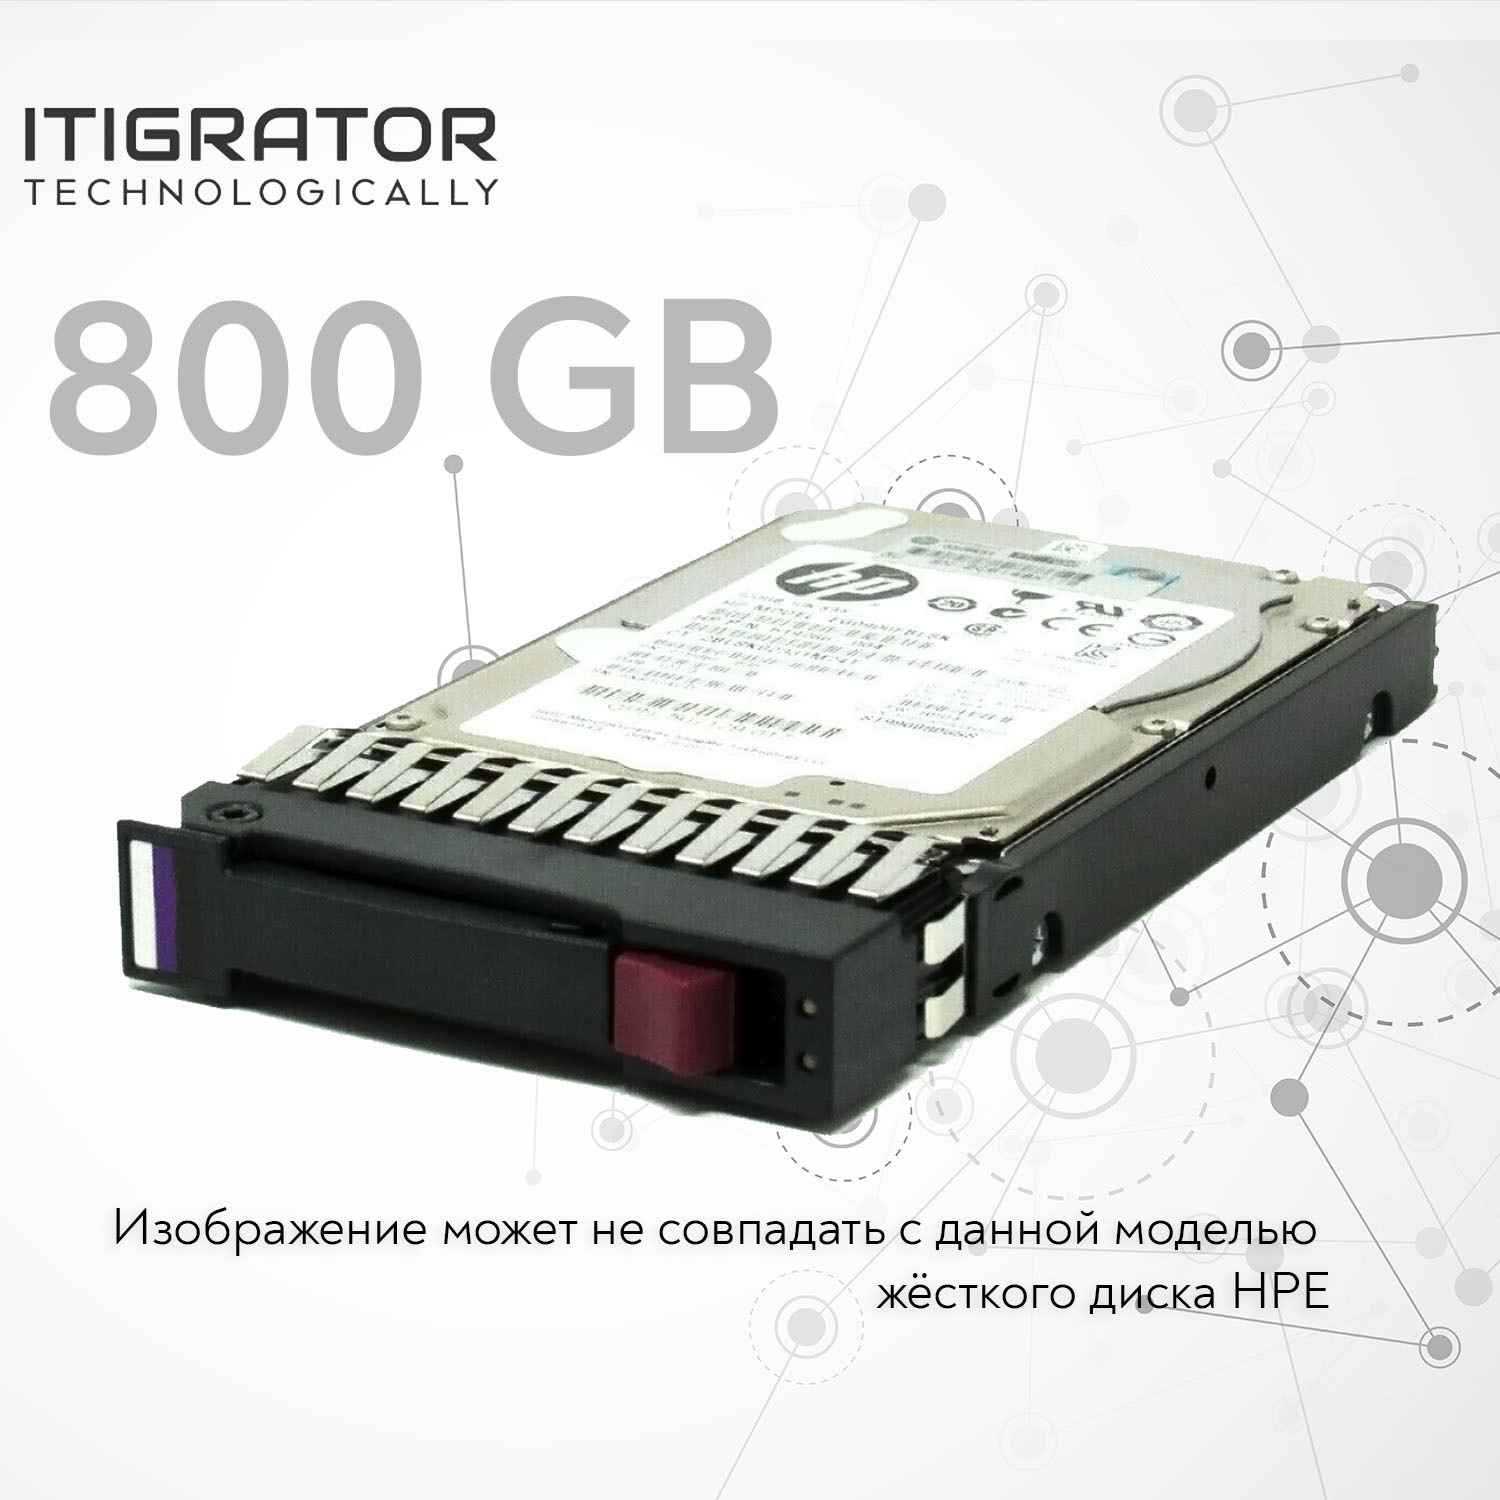 Жесткий диск HPE 800Gb [805382-001]